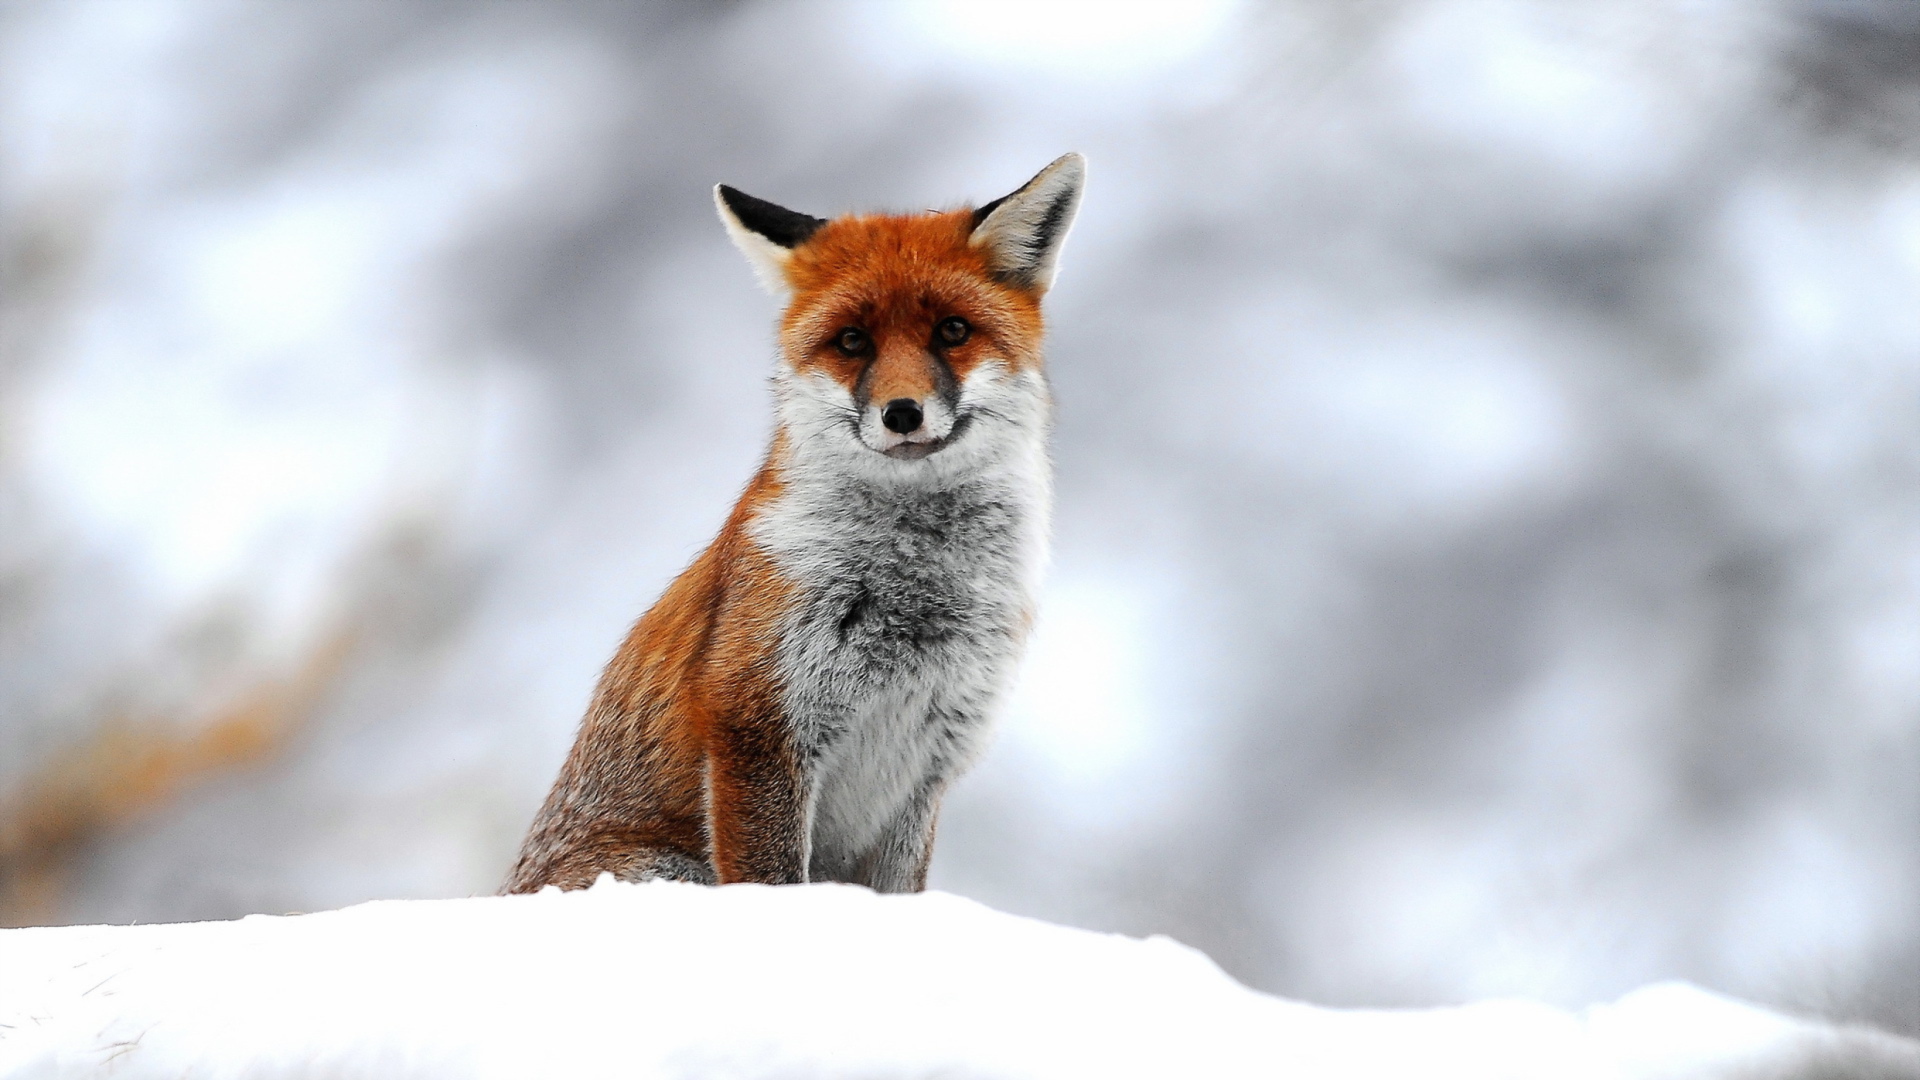 Cute Fox In Winter wallpaper 1920x1080